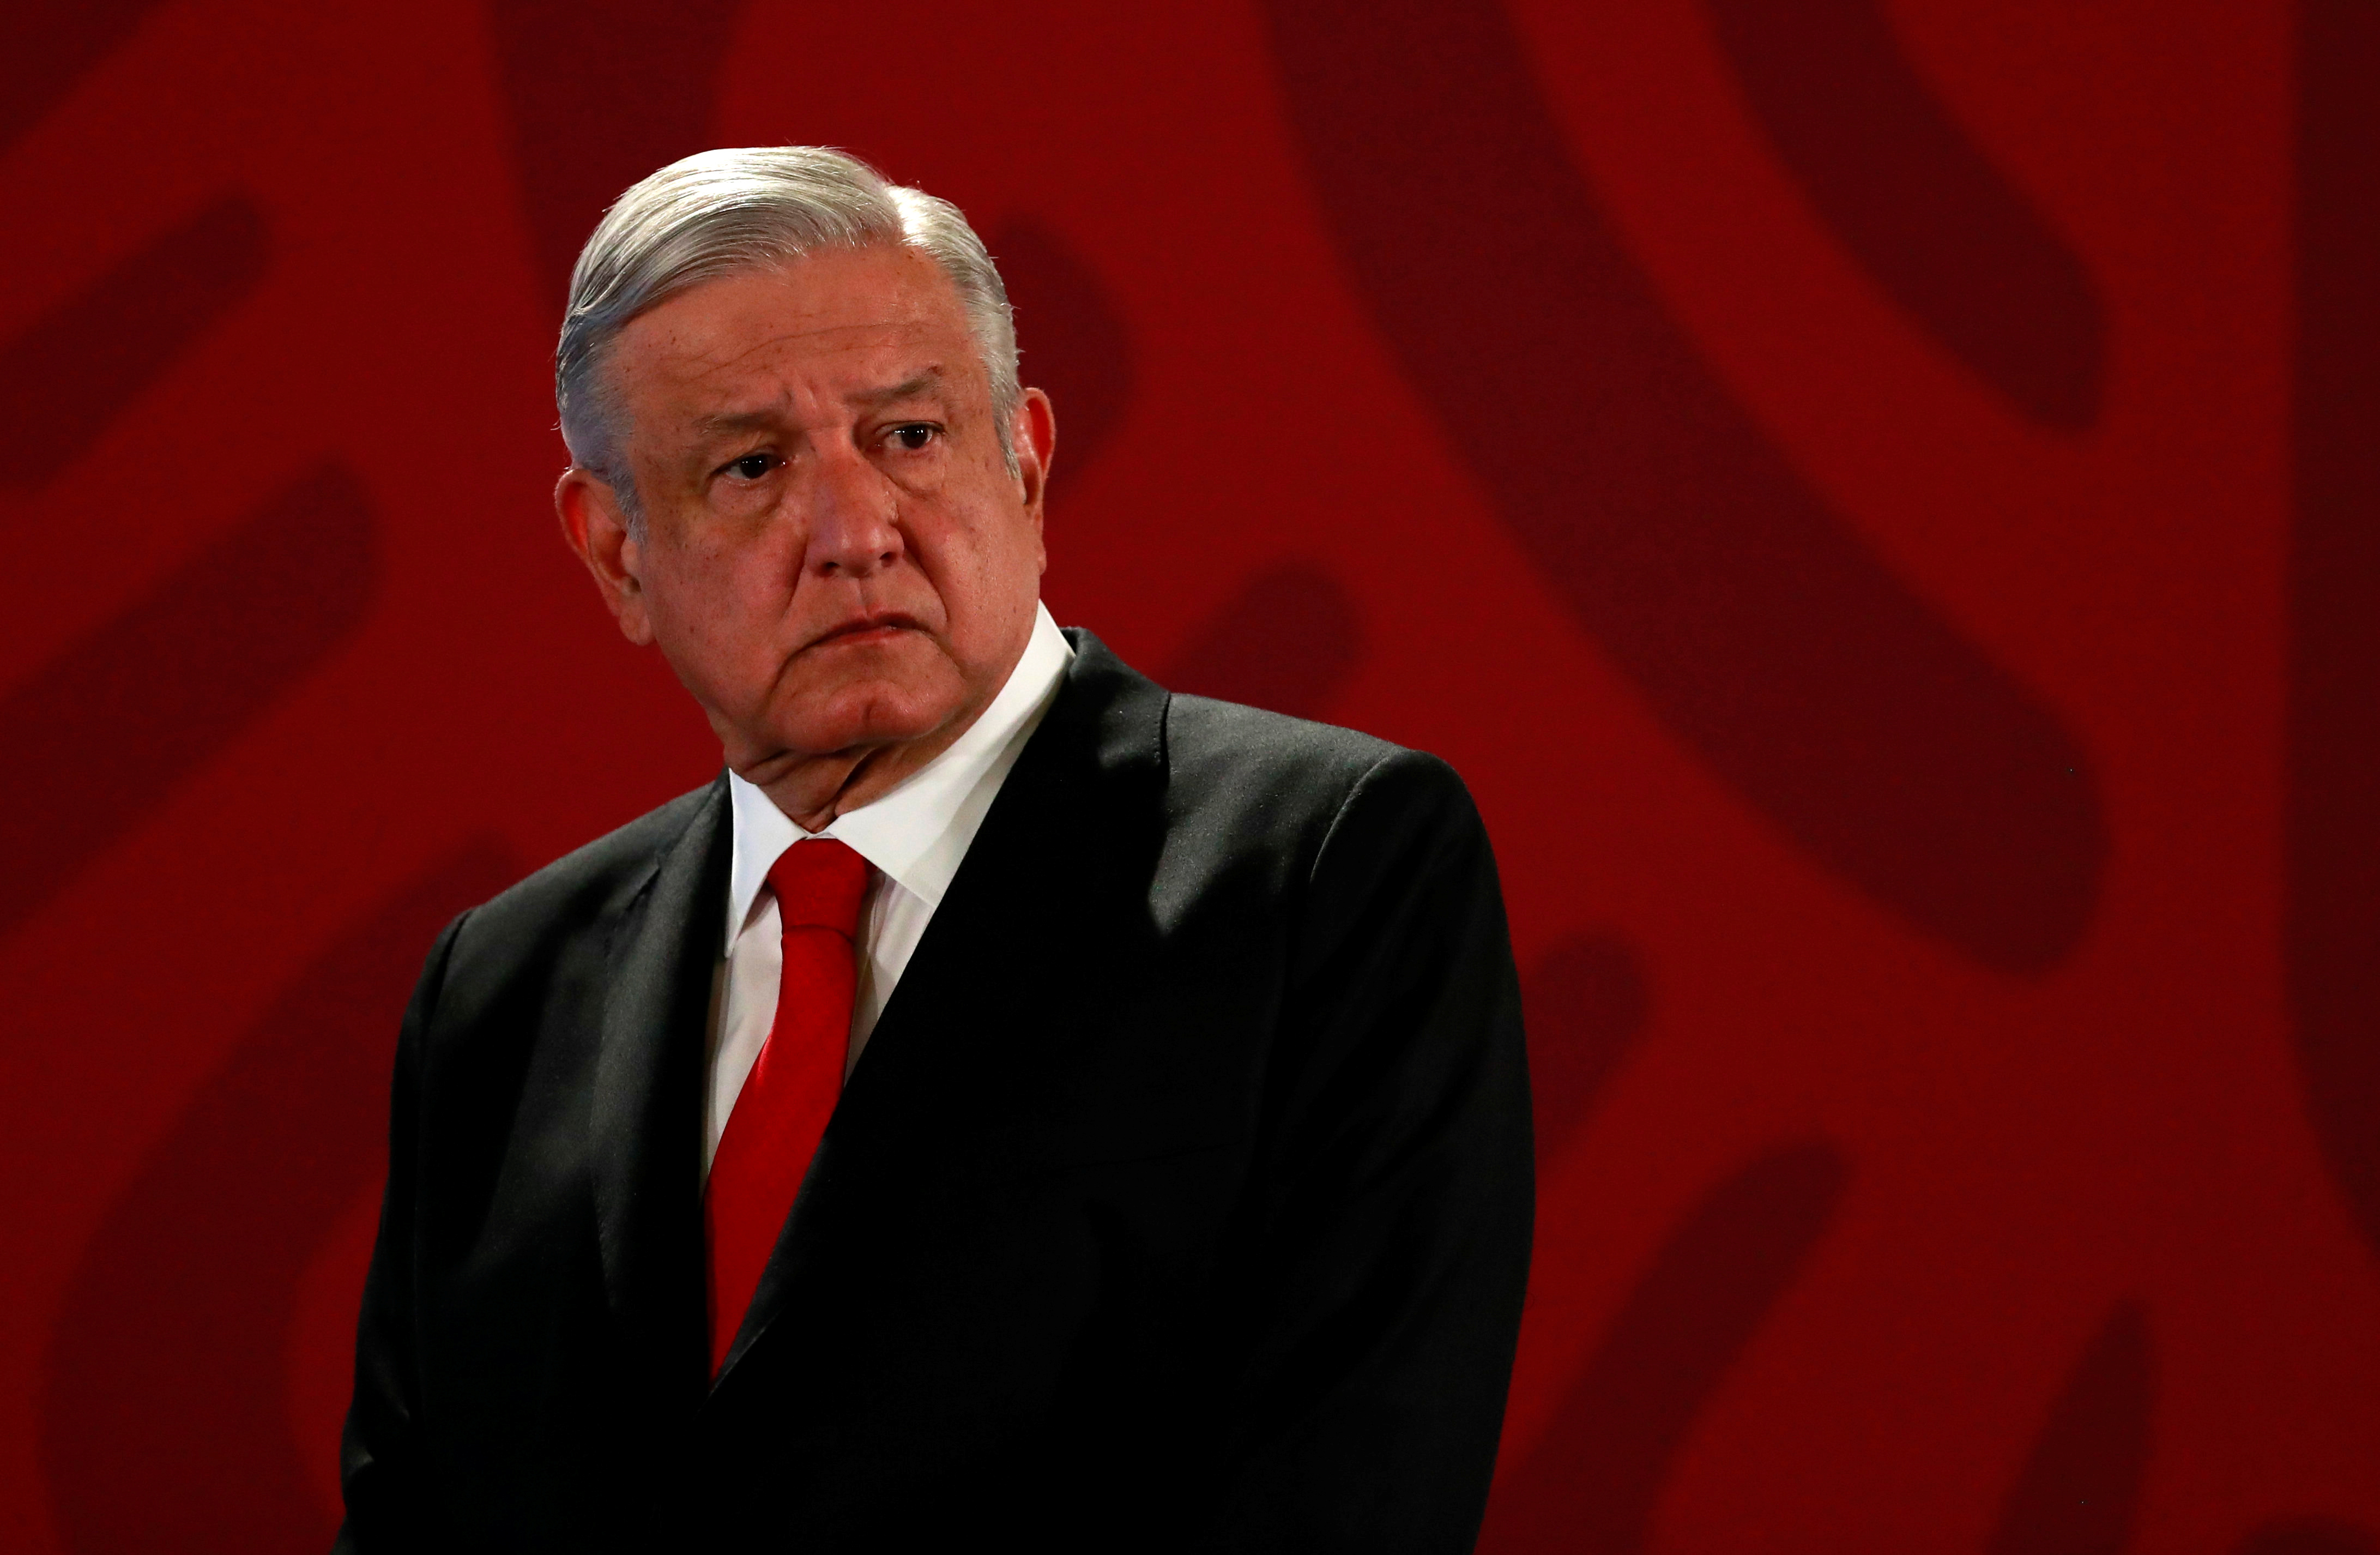 La última jugada de López Obrador contra sus rivales, que intenta desmontar su descrédito por mala gestión durante la pandemia